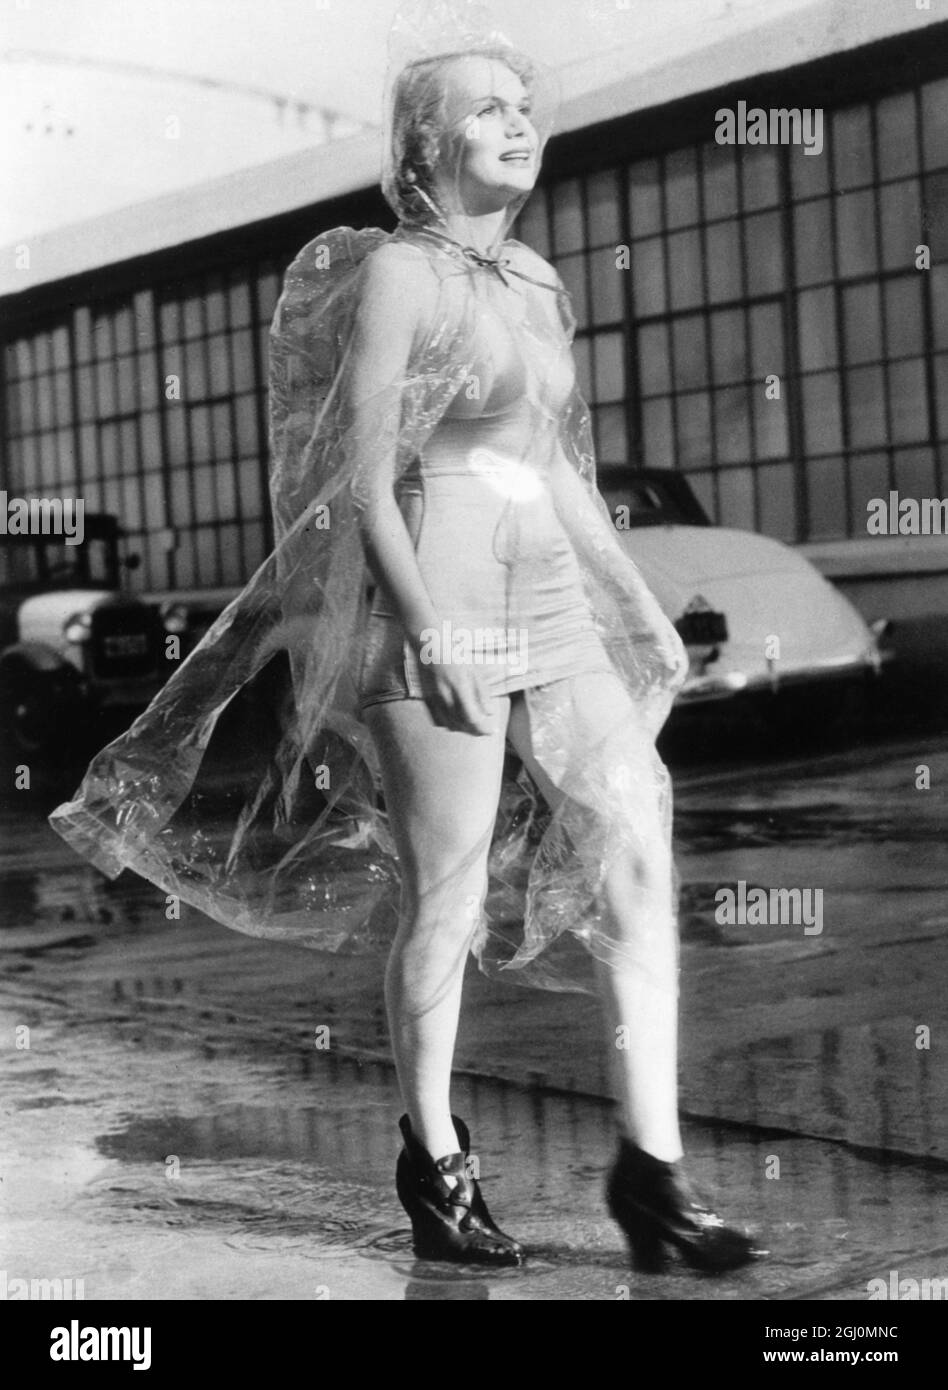 Marie Wilson, die Hollywood-Schauspielerin, schützt ihr modisches Badekleid mit diesem neuartigen Regenwetter-Kostüm aus Zellophan. Ein Paar Goloshes vervollständigt das Outfit Kaliforniens kürzlich heftige Regenfälle inspirierten das neue Kostüm. 1936 Stockfoto